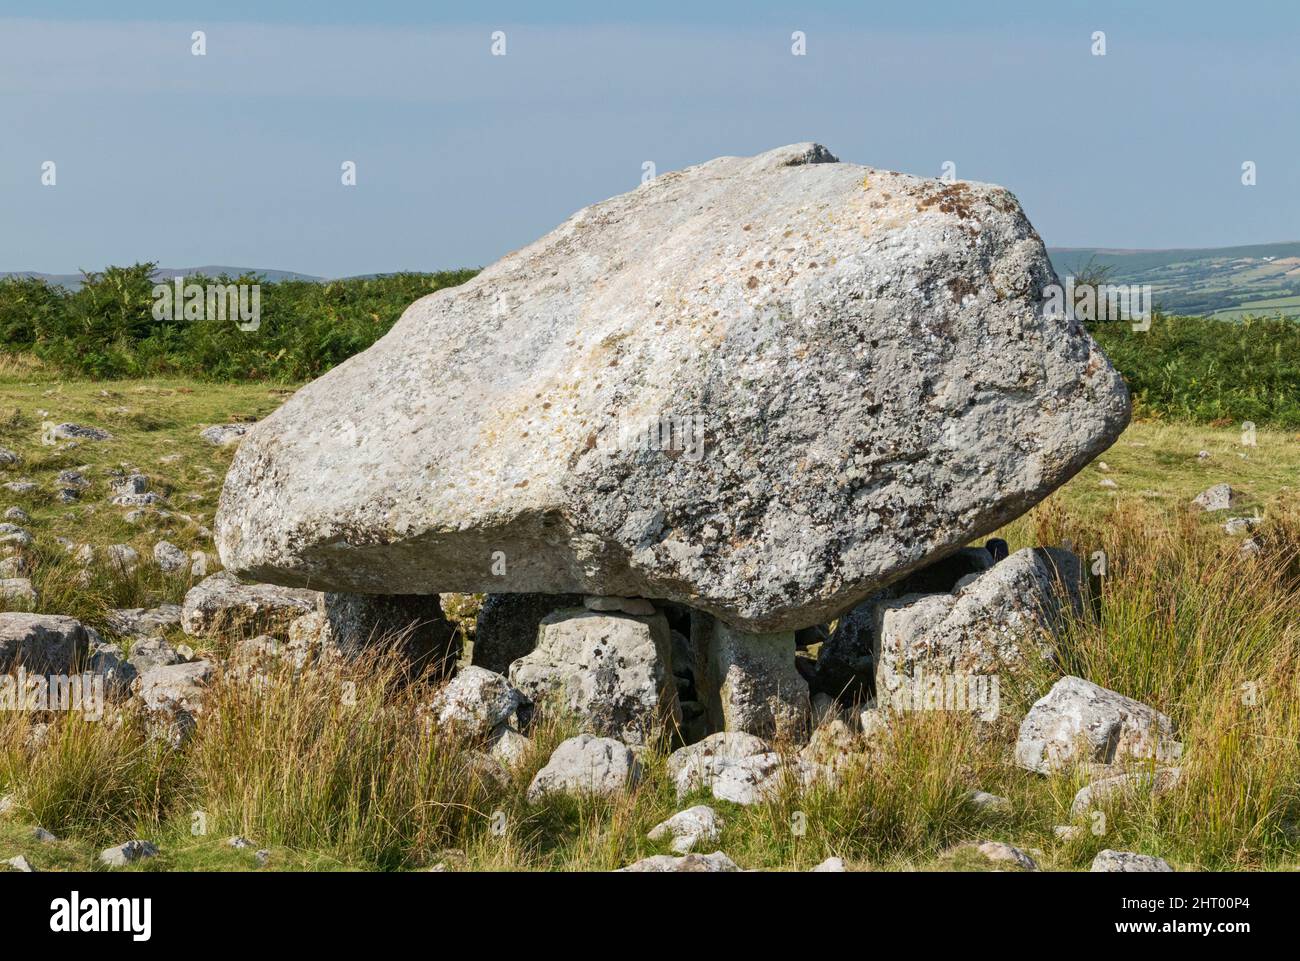 Arthur's Stone (Cámara de entierro neolítica - 2500 aC) Cefn Bryn, Gower Peninsula, Swansea, Gales del Sur, Reino Unido Foto de stock